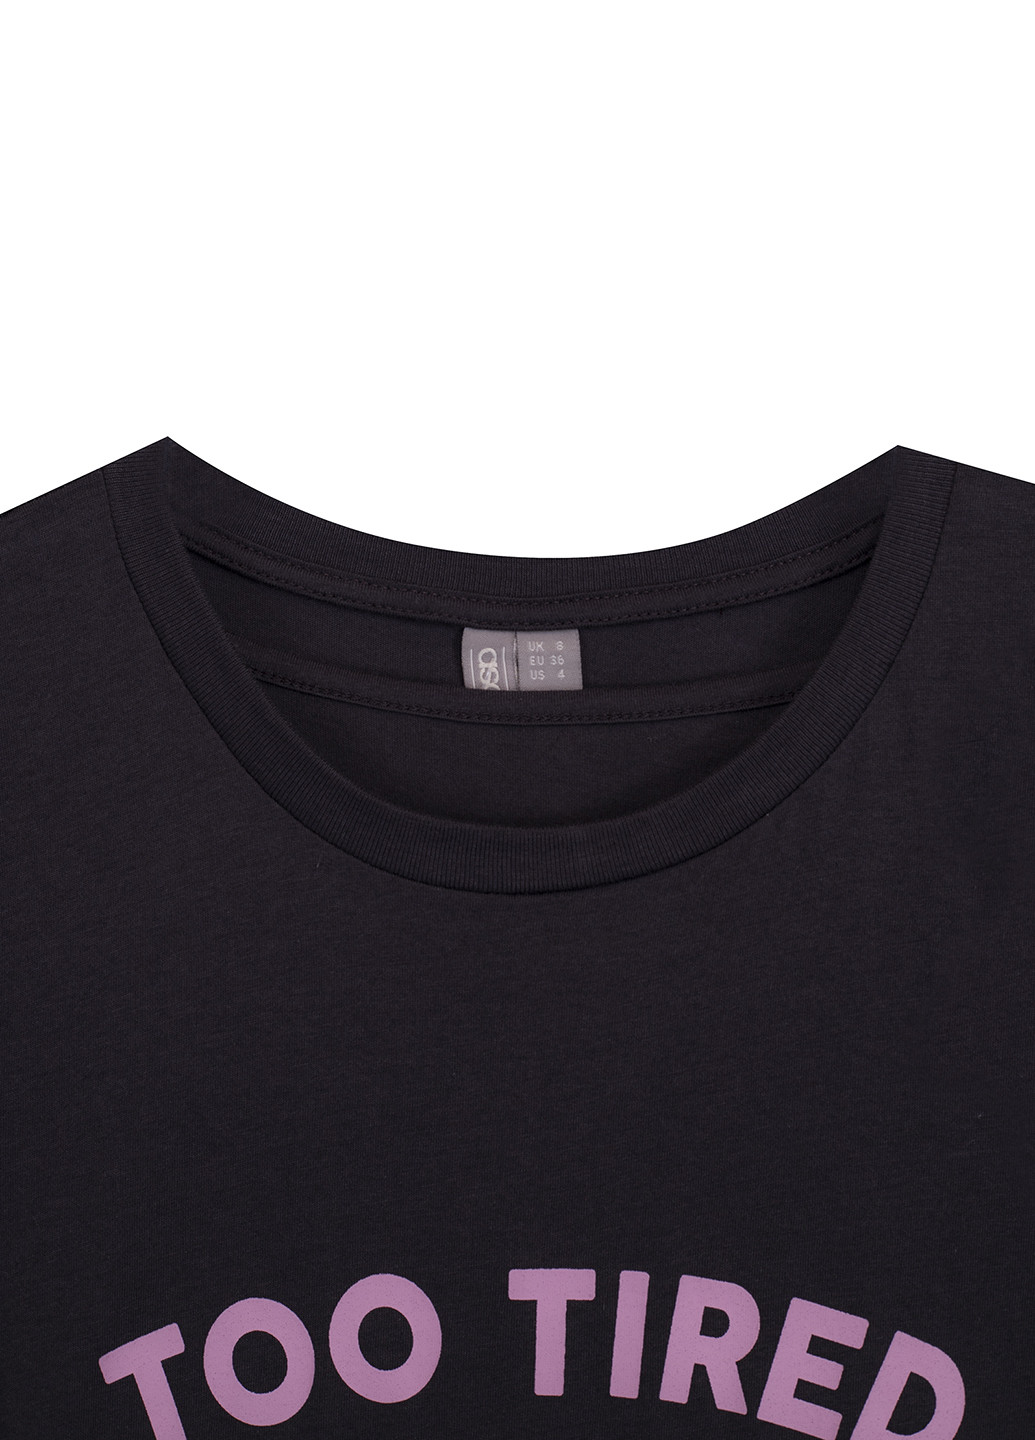 Темно-серая летняя футболка Asos